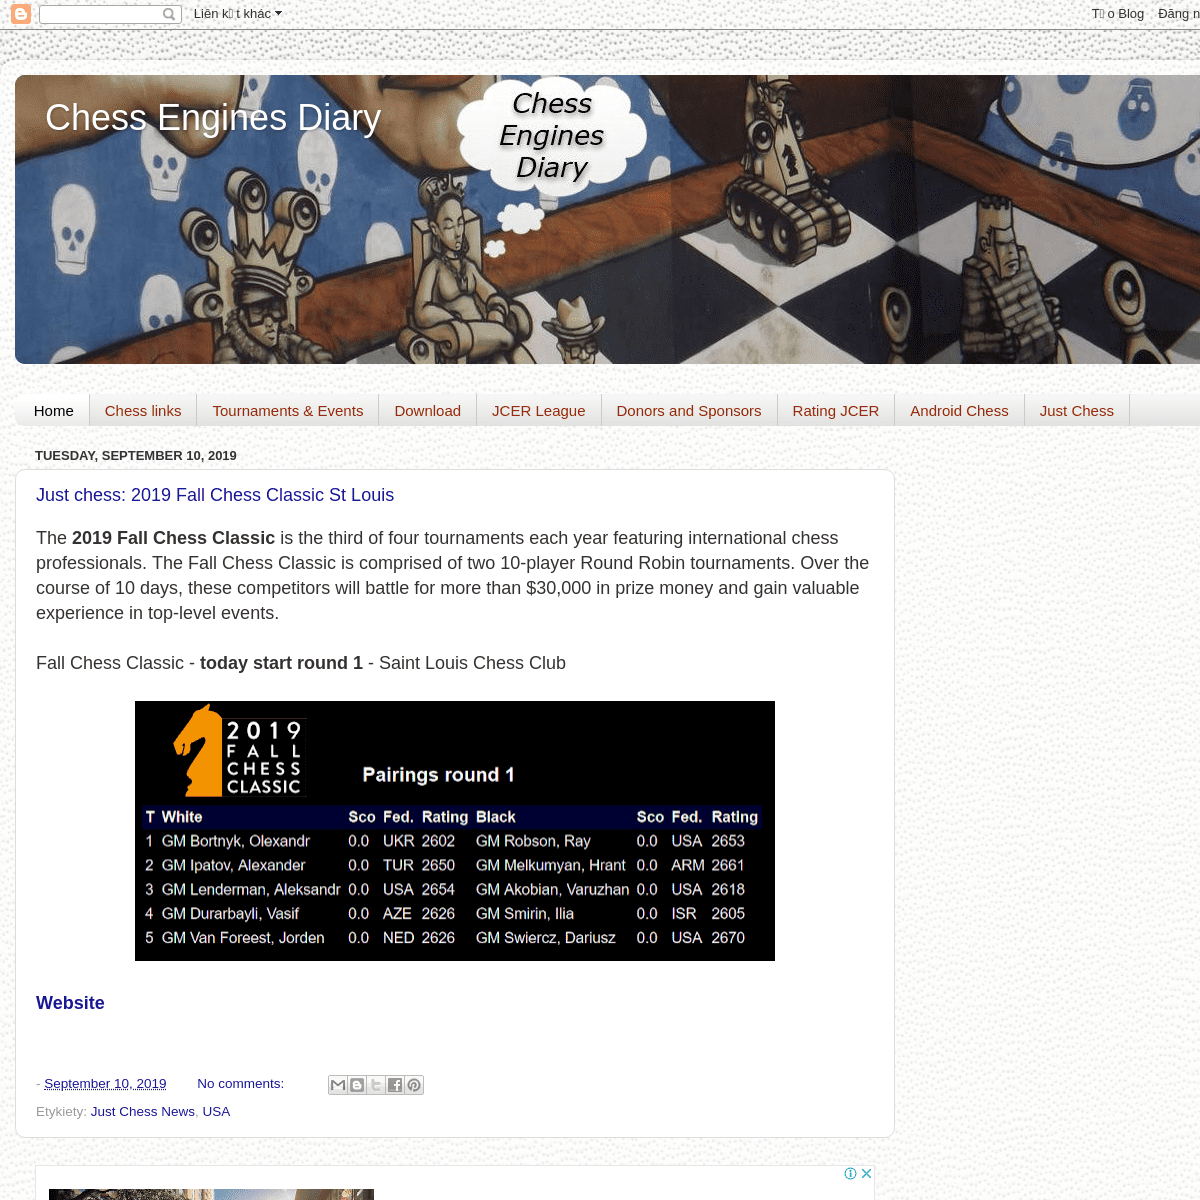 Amifish: Chess program interface for Stockfish engine (Amiga OS4)